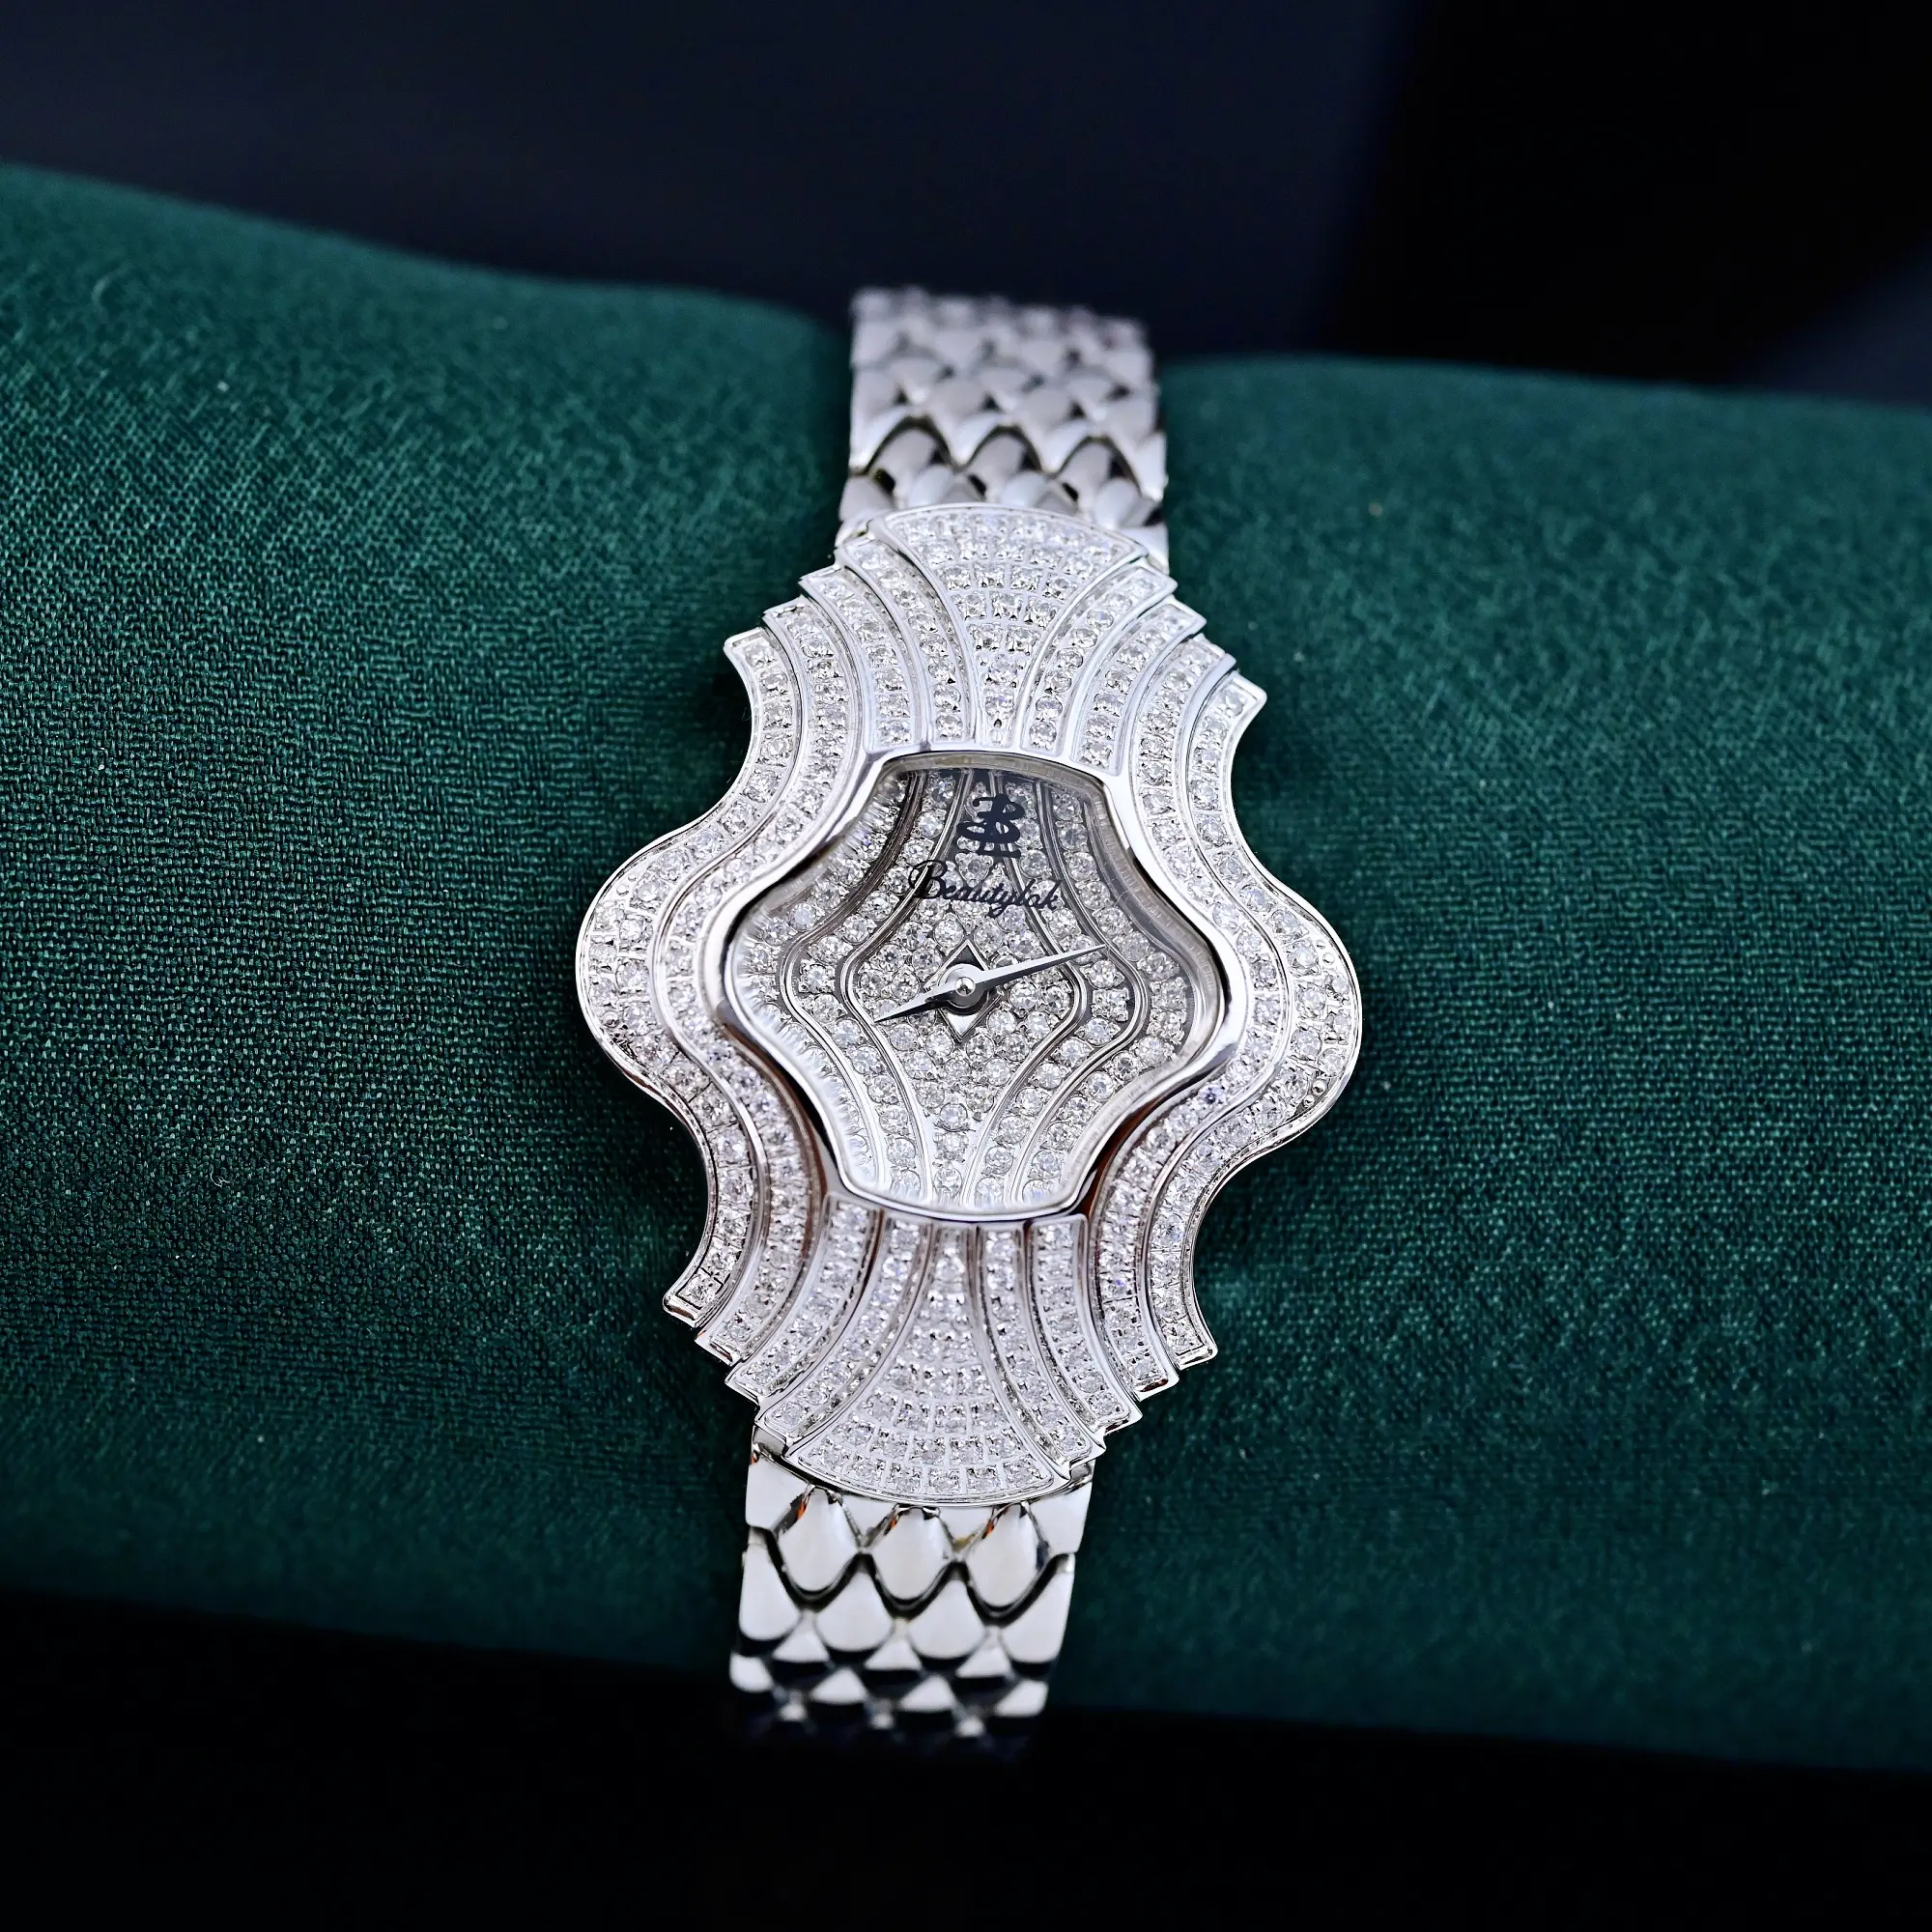 A coroa da rainha, um relógio feminino medieval luxuoso e elegante. O novo relógio é composto com strass e artesanato requintado